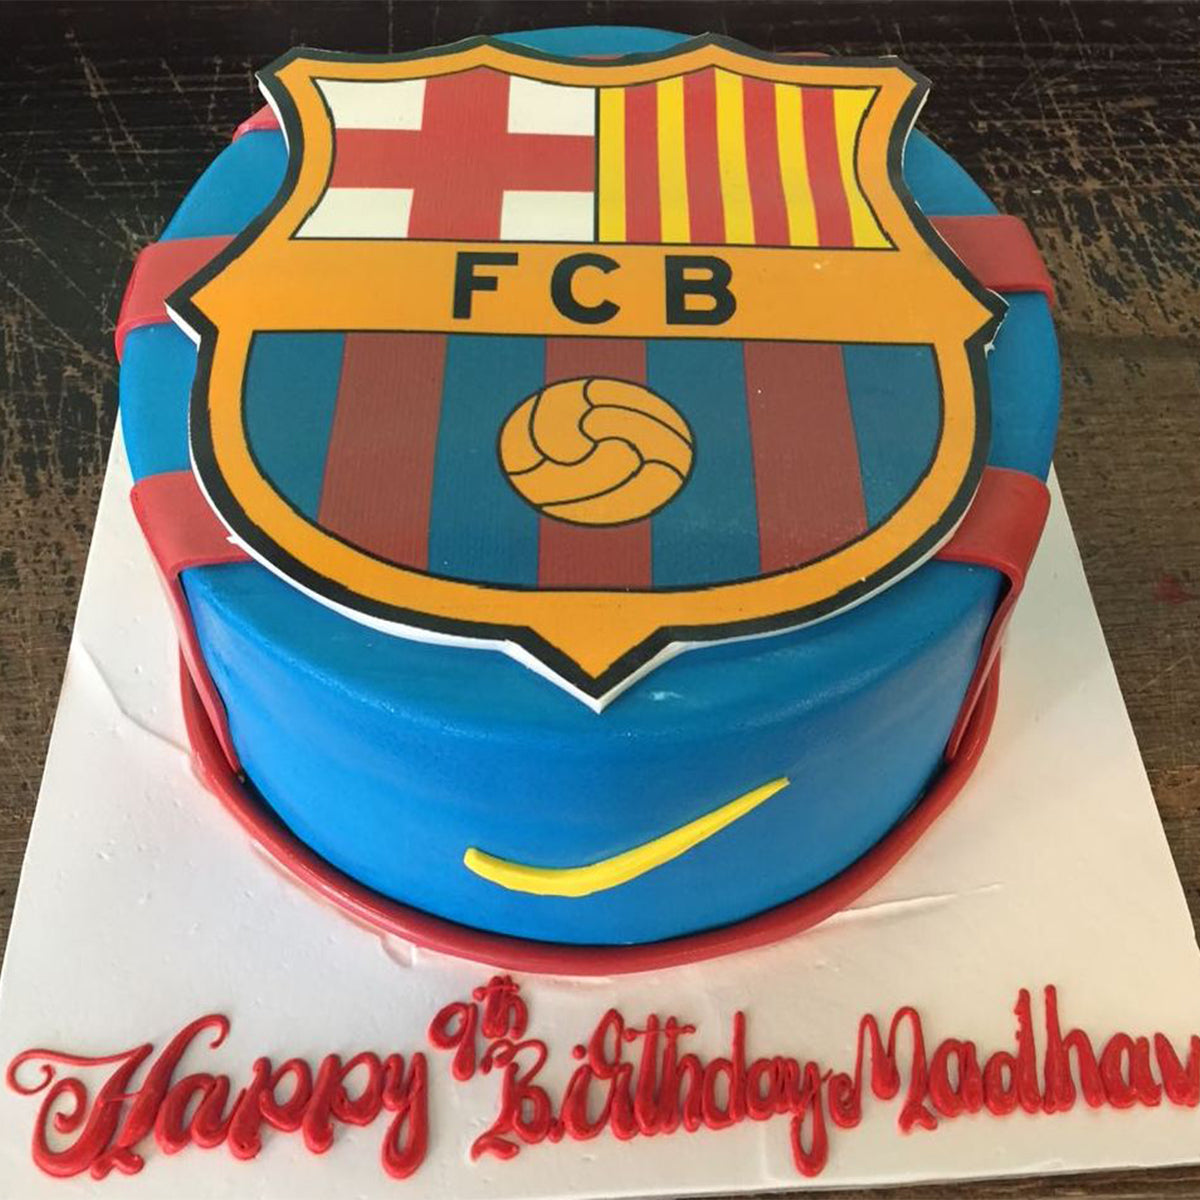 Barcelona cake 16